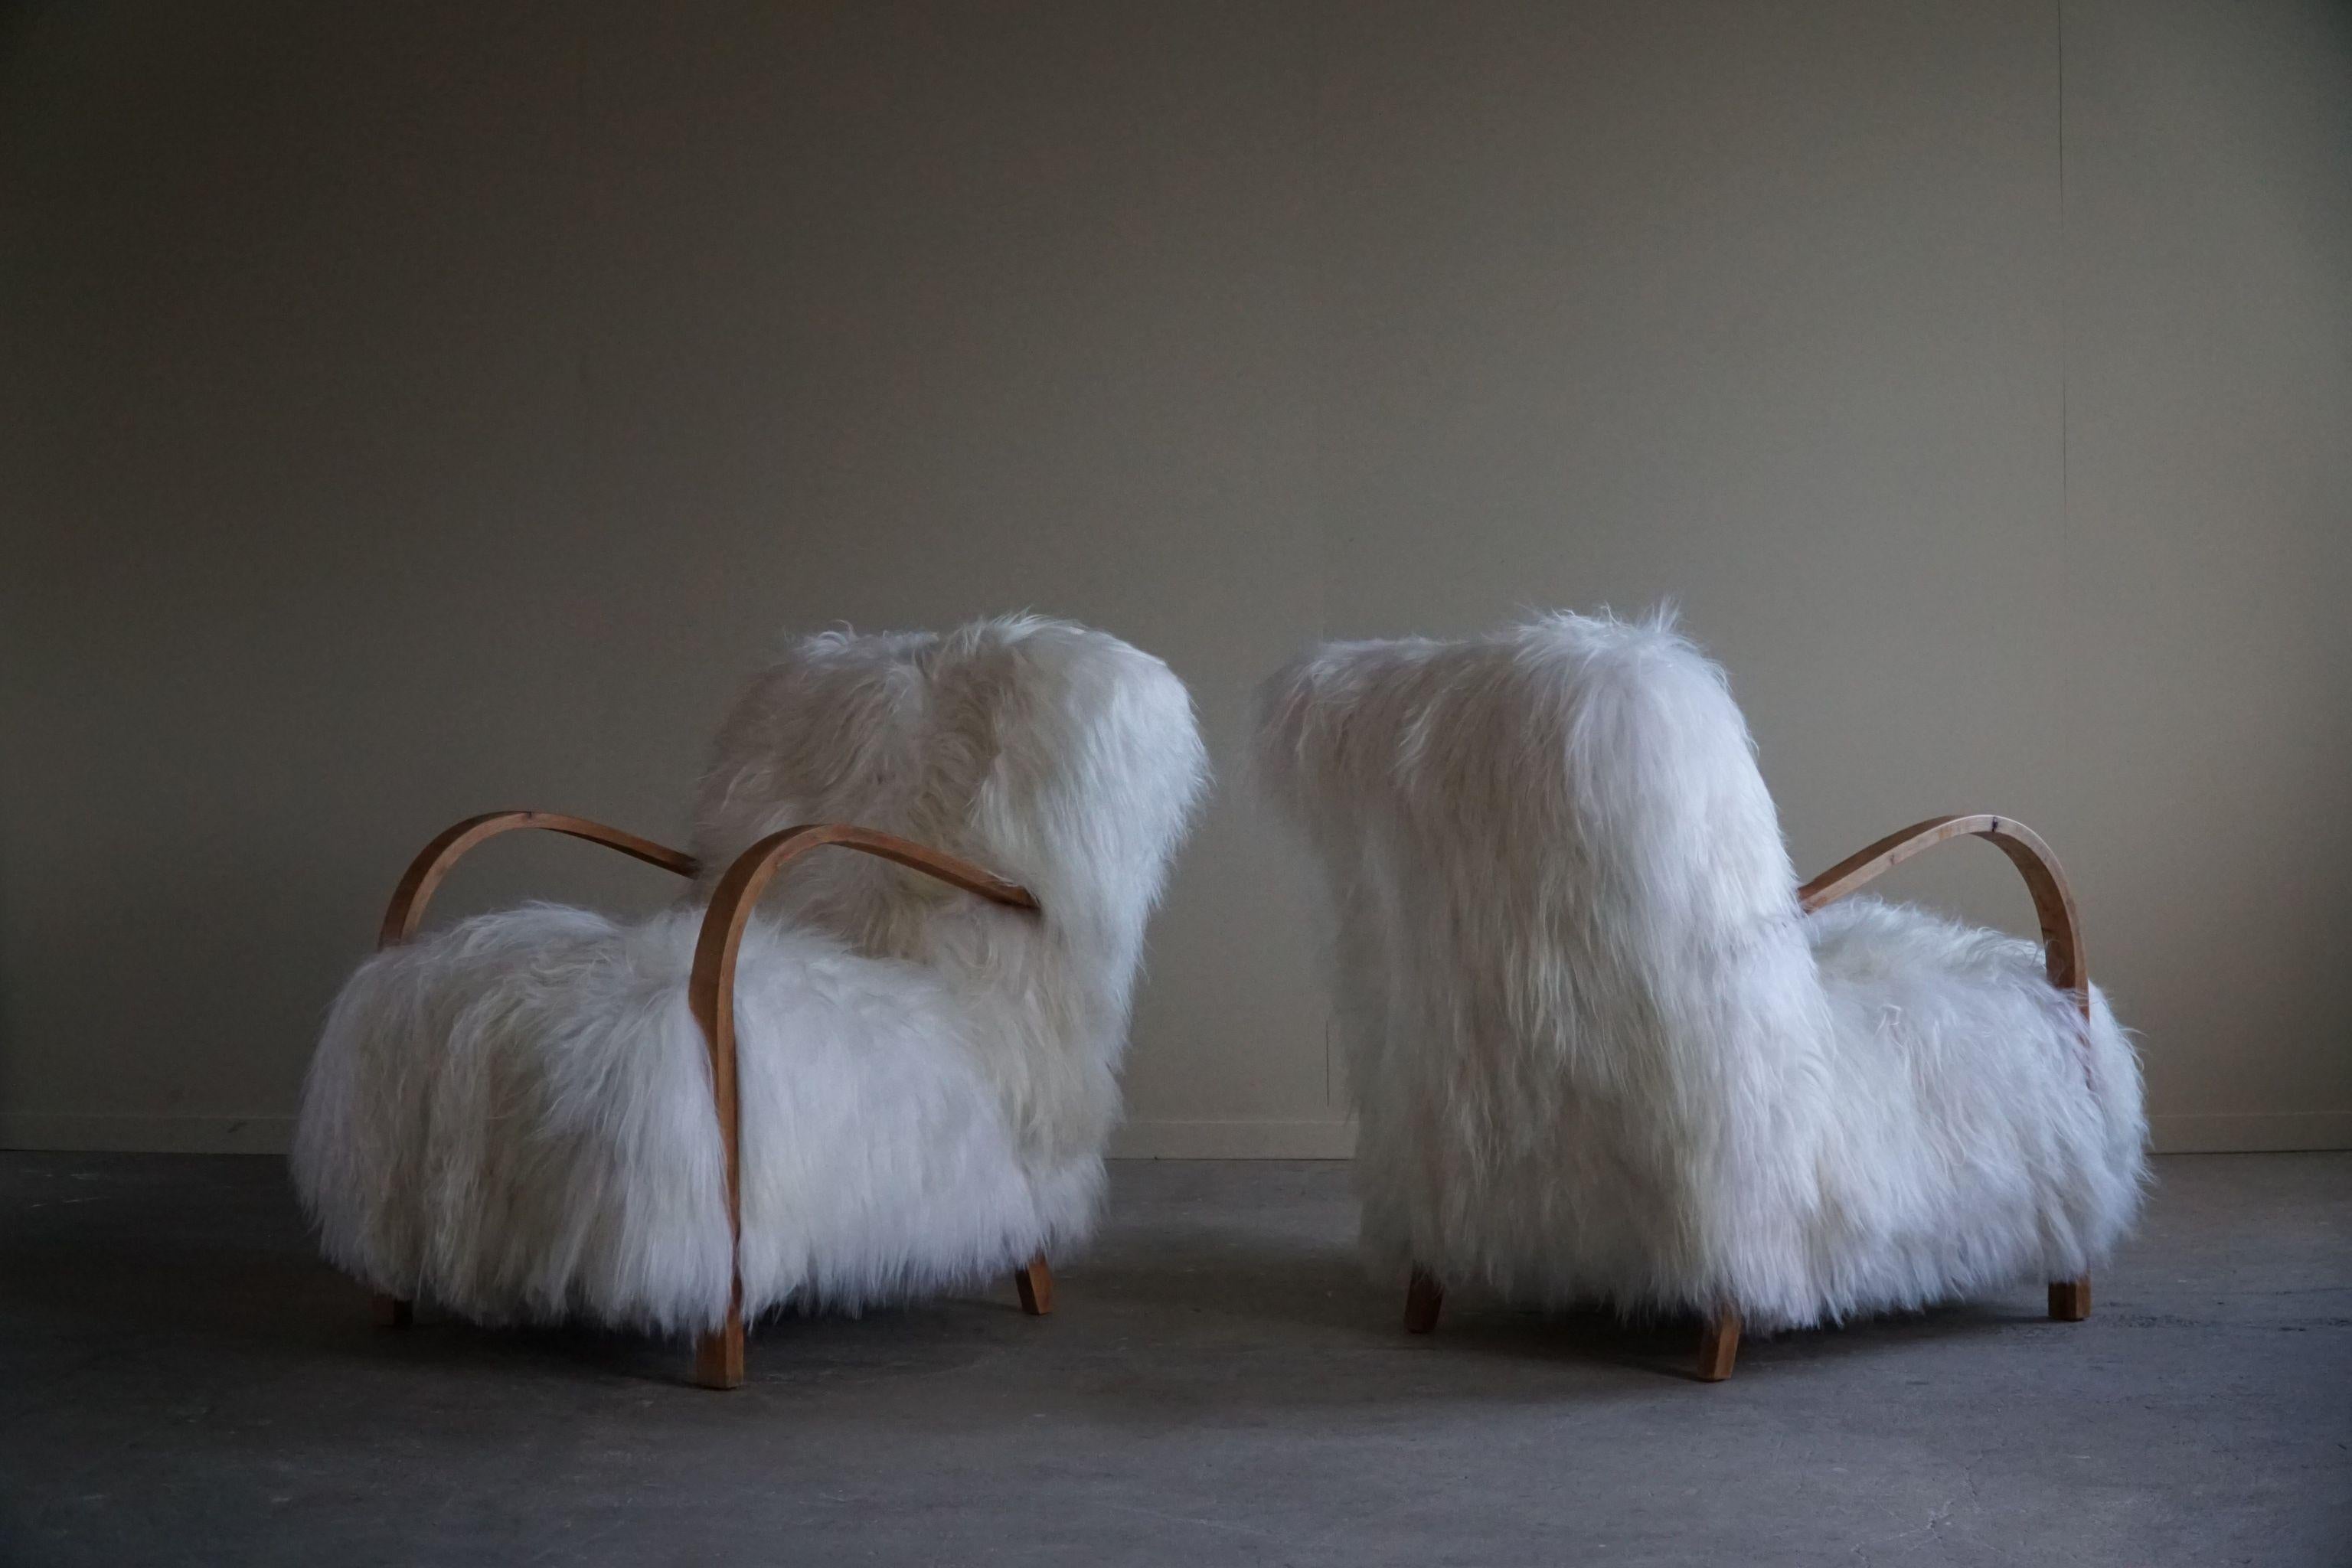 Ein so exquisites und seltenes Paar Art Deco Sessel mit Armlehnen aus massiver Eiche. Die Stühle wurden fachmännisch mit einem luxuriösen isländischen Schaffell gepolstert, das der Gesamtästhetik eine weiche und fühlbare Textur verleiht. Die Wolle